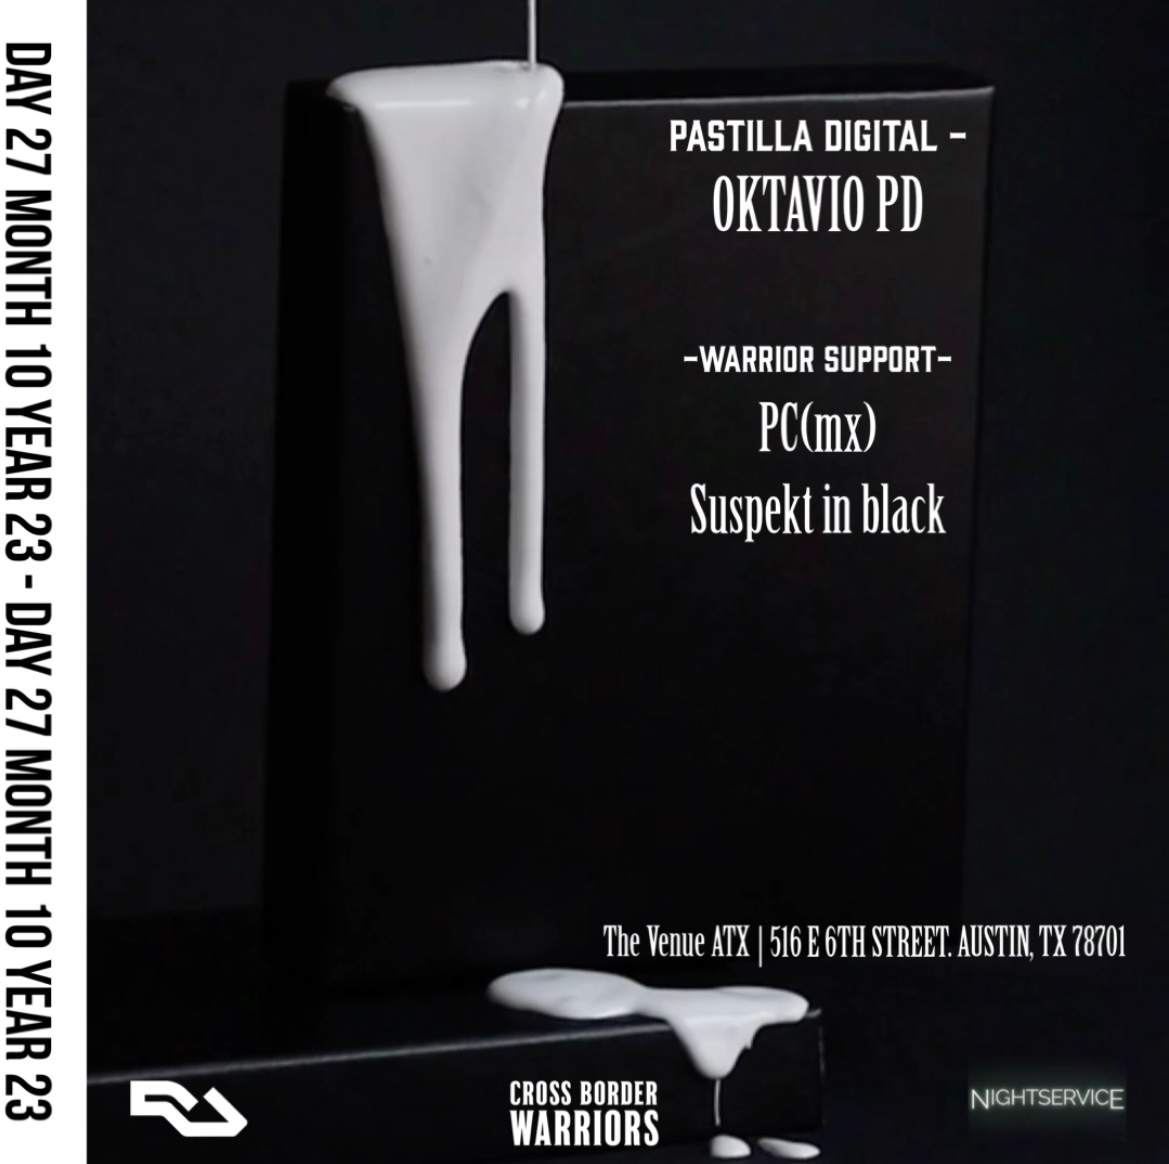 Pastilla Digital _ Oktavio PD [Warrior Support] - PC(mx) / Suspekt in black  - Página frontal